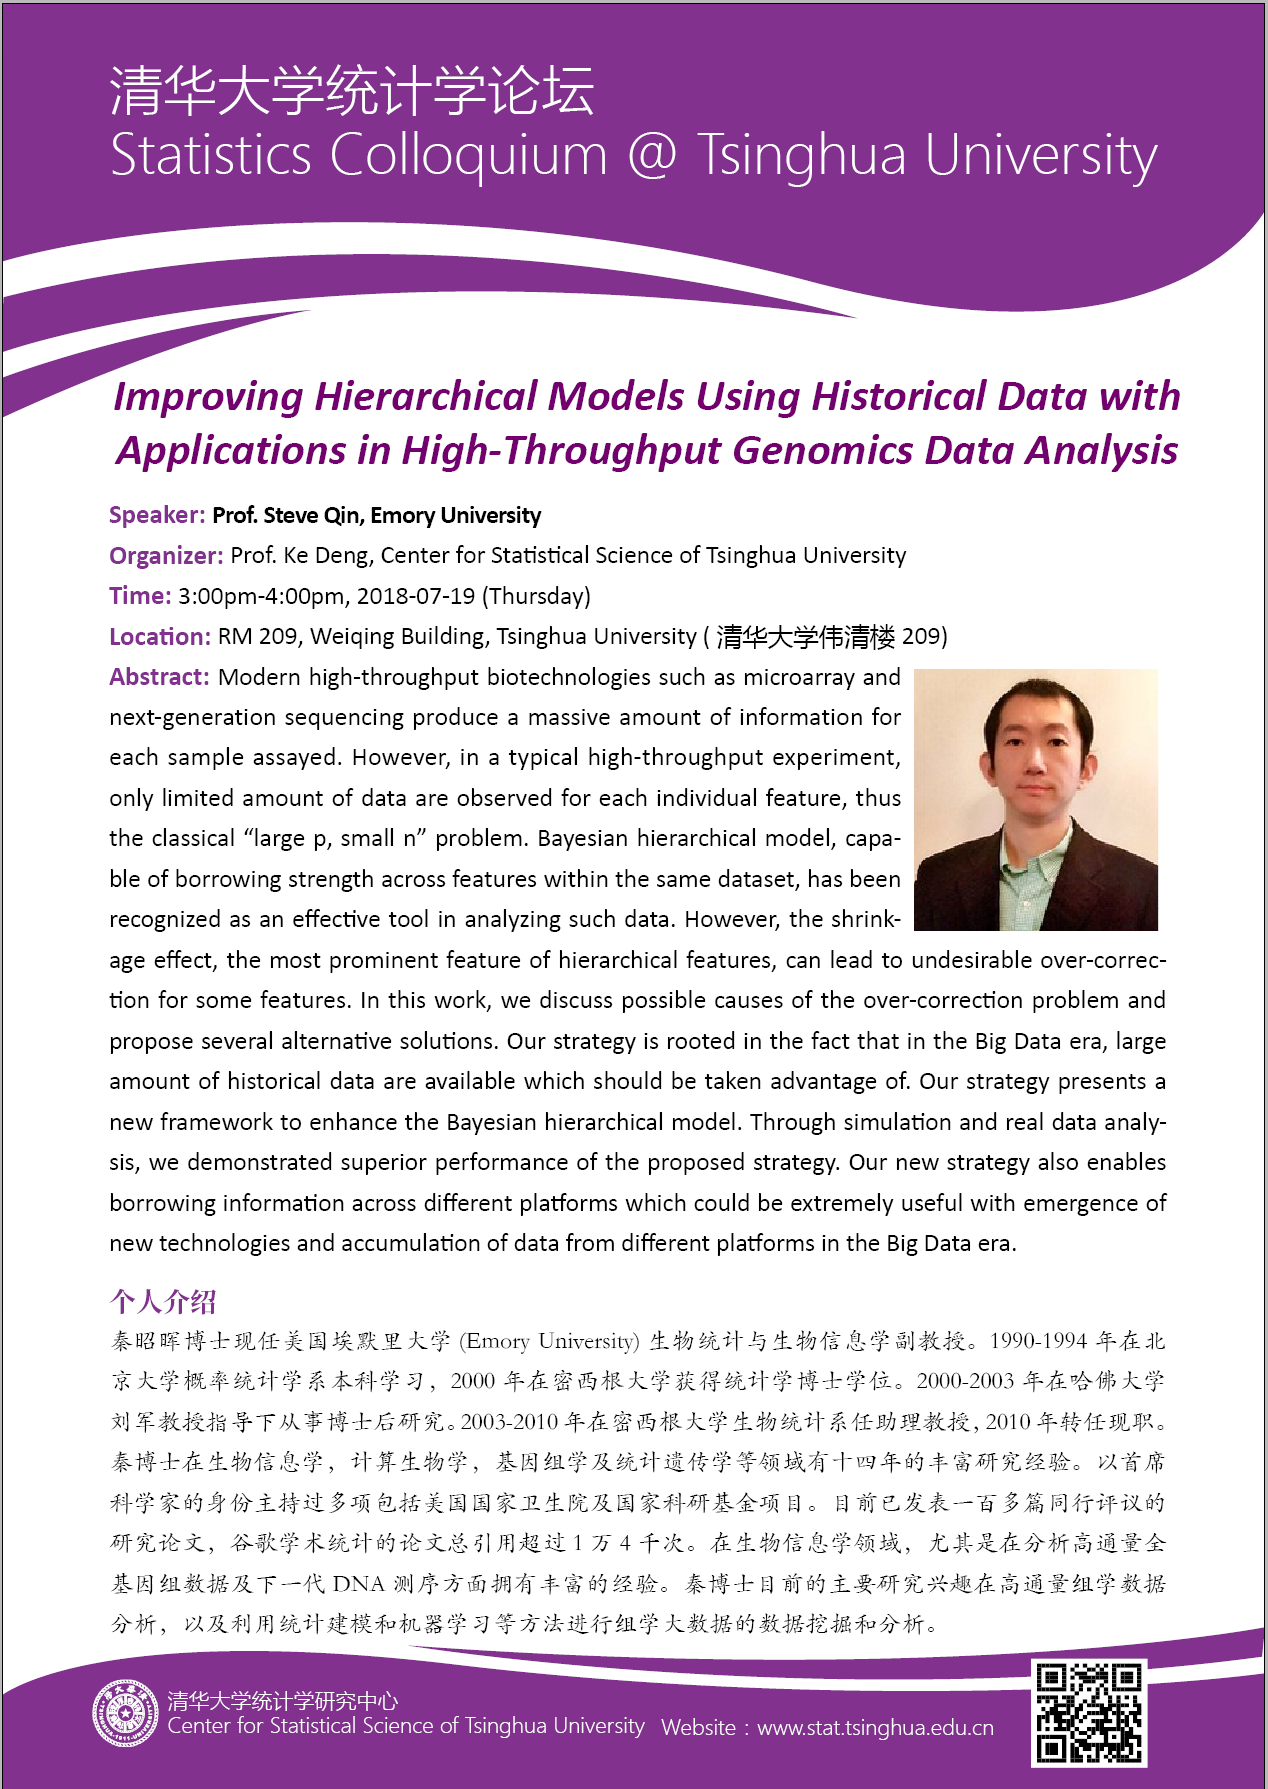 【统计学论坛】Improving Hierarchical Models Using Historical Data with Applications in High-Throughput Genomics Data Analysis